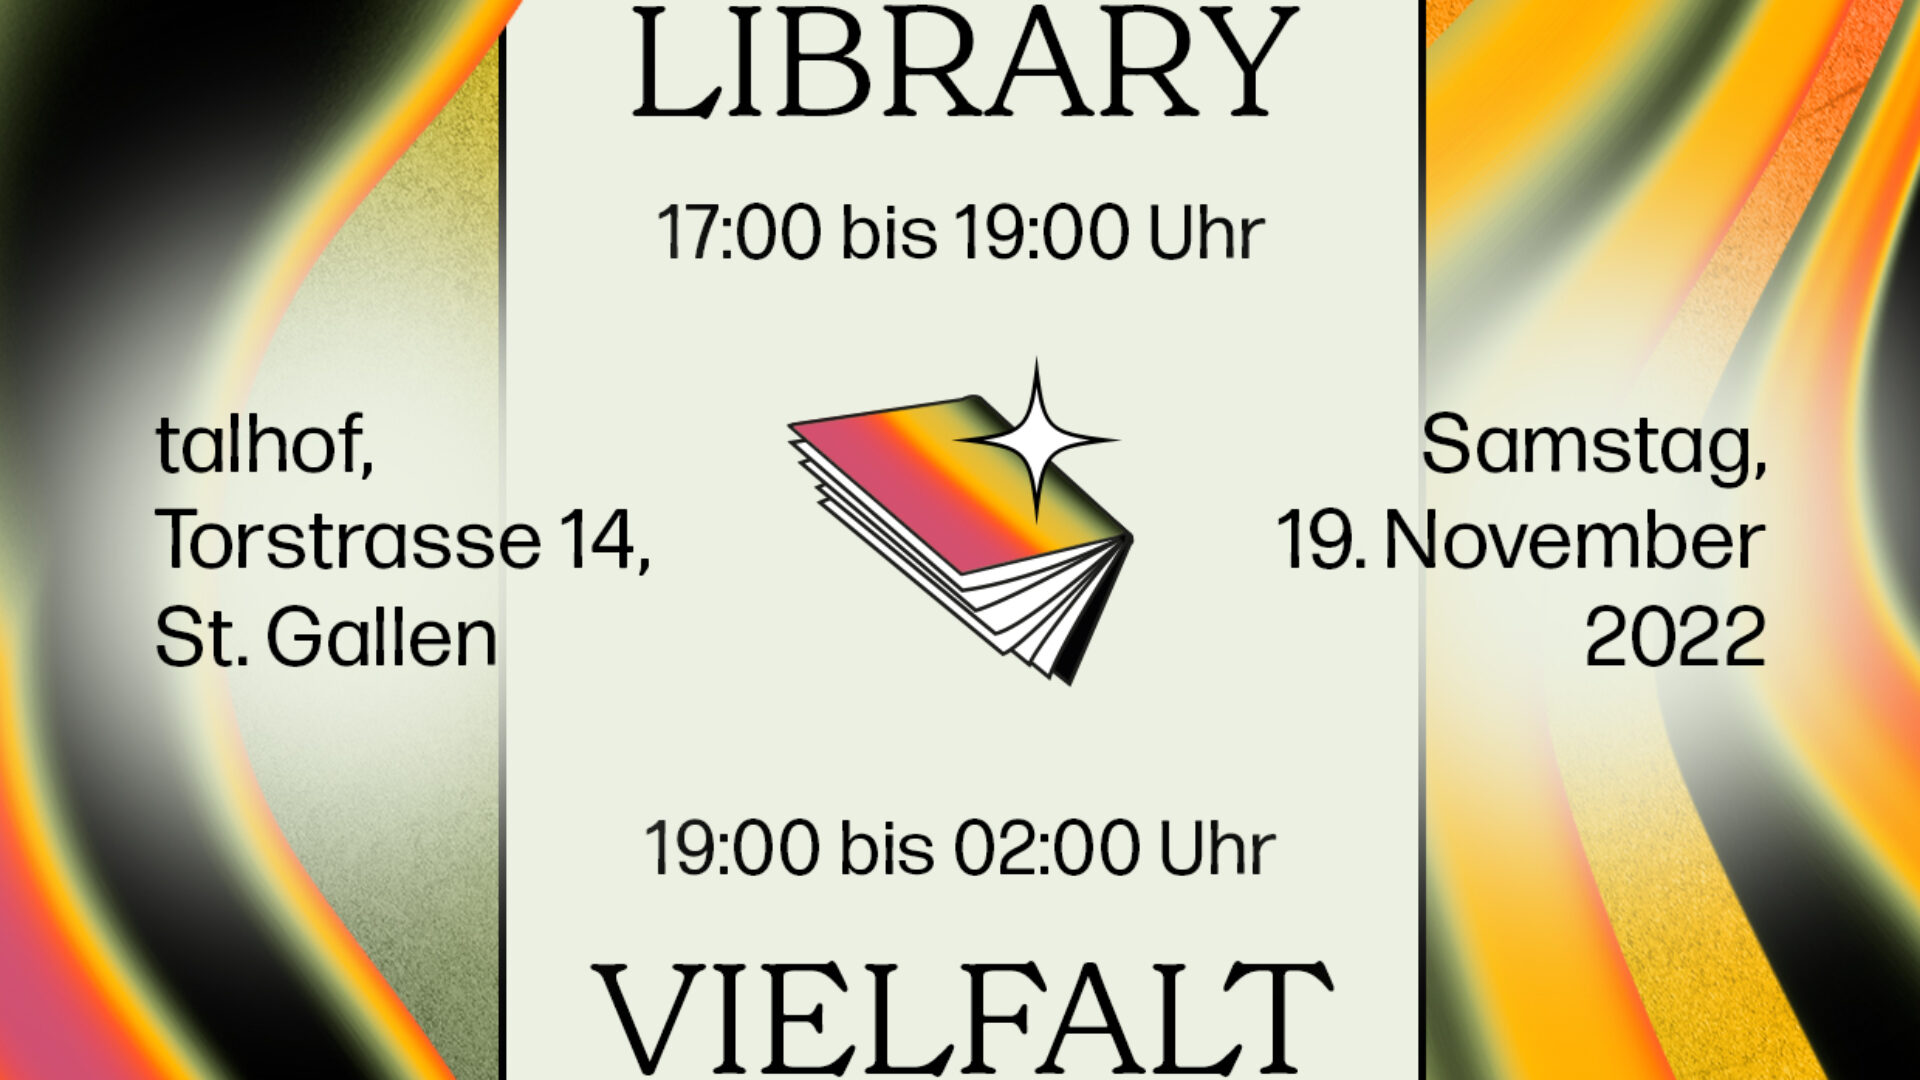 Living Library und Vielfalt-Party 2022